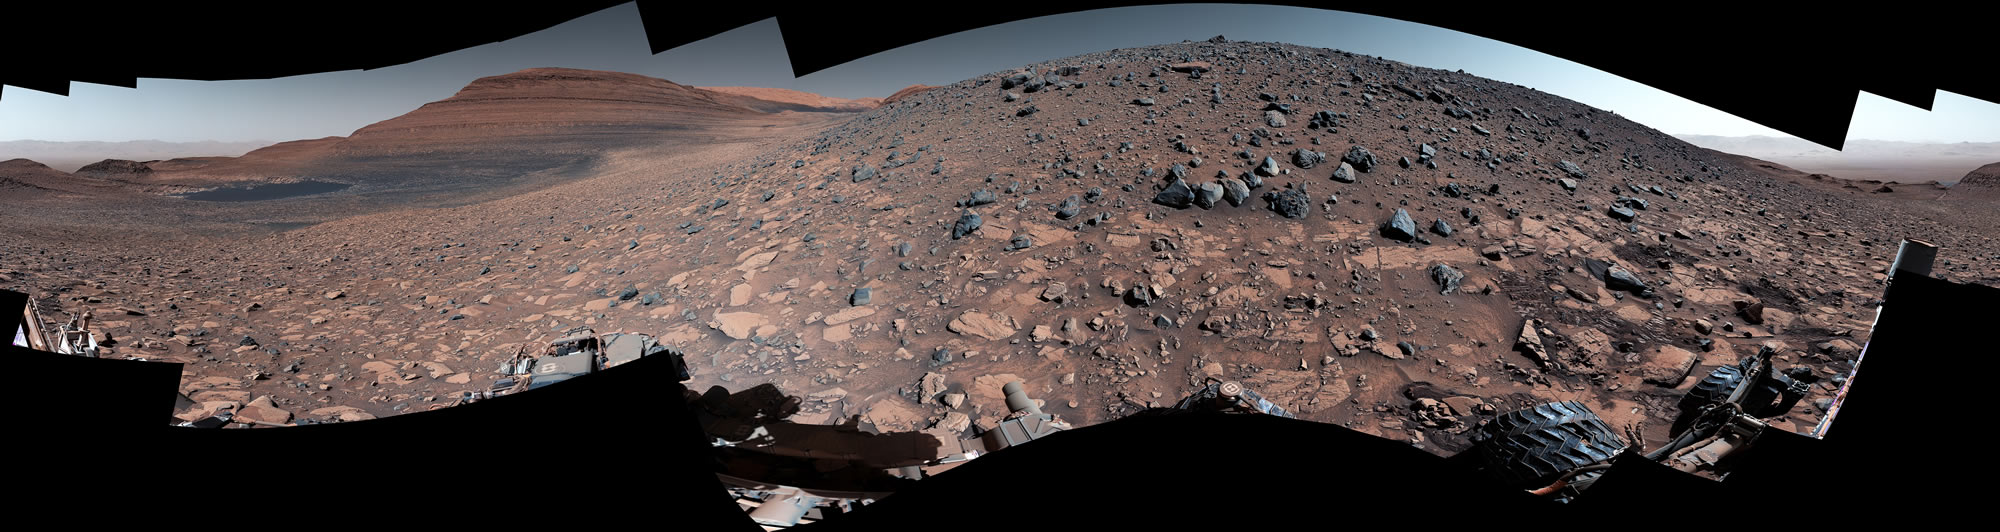 NASA的好奇号到达水留下碎片堆积的火星山脊